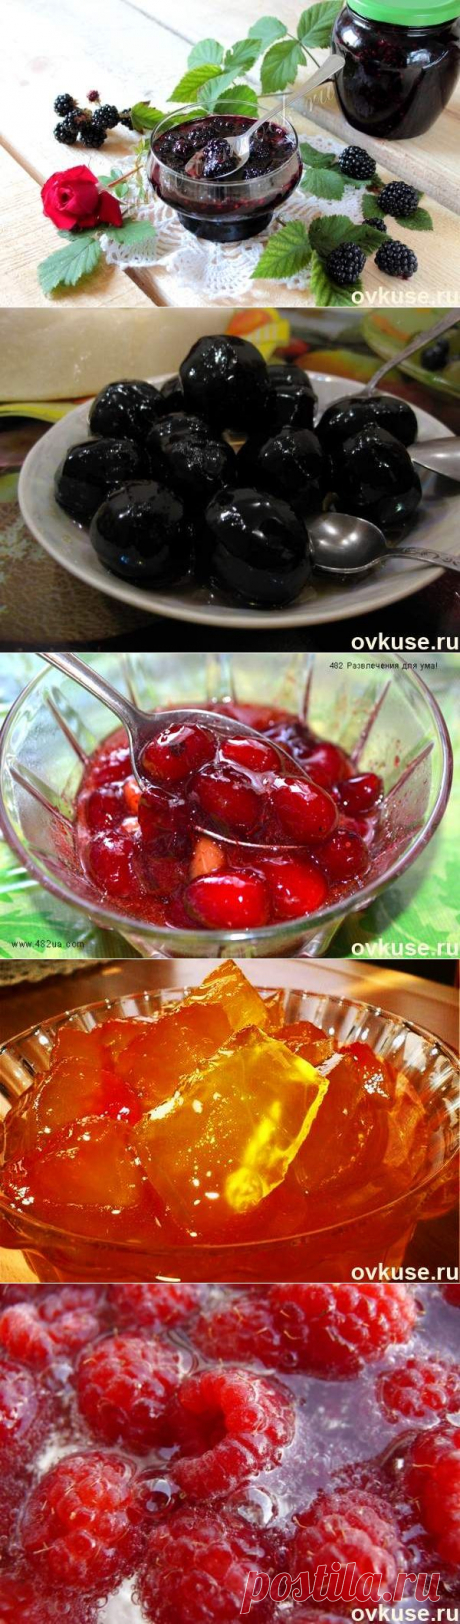 Заготовка витаминов (подборка варенья) - Простые рецепты Овкусе.ру